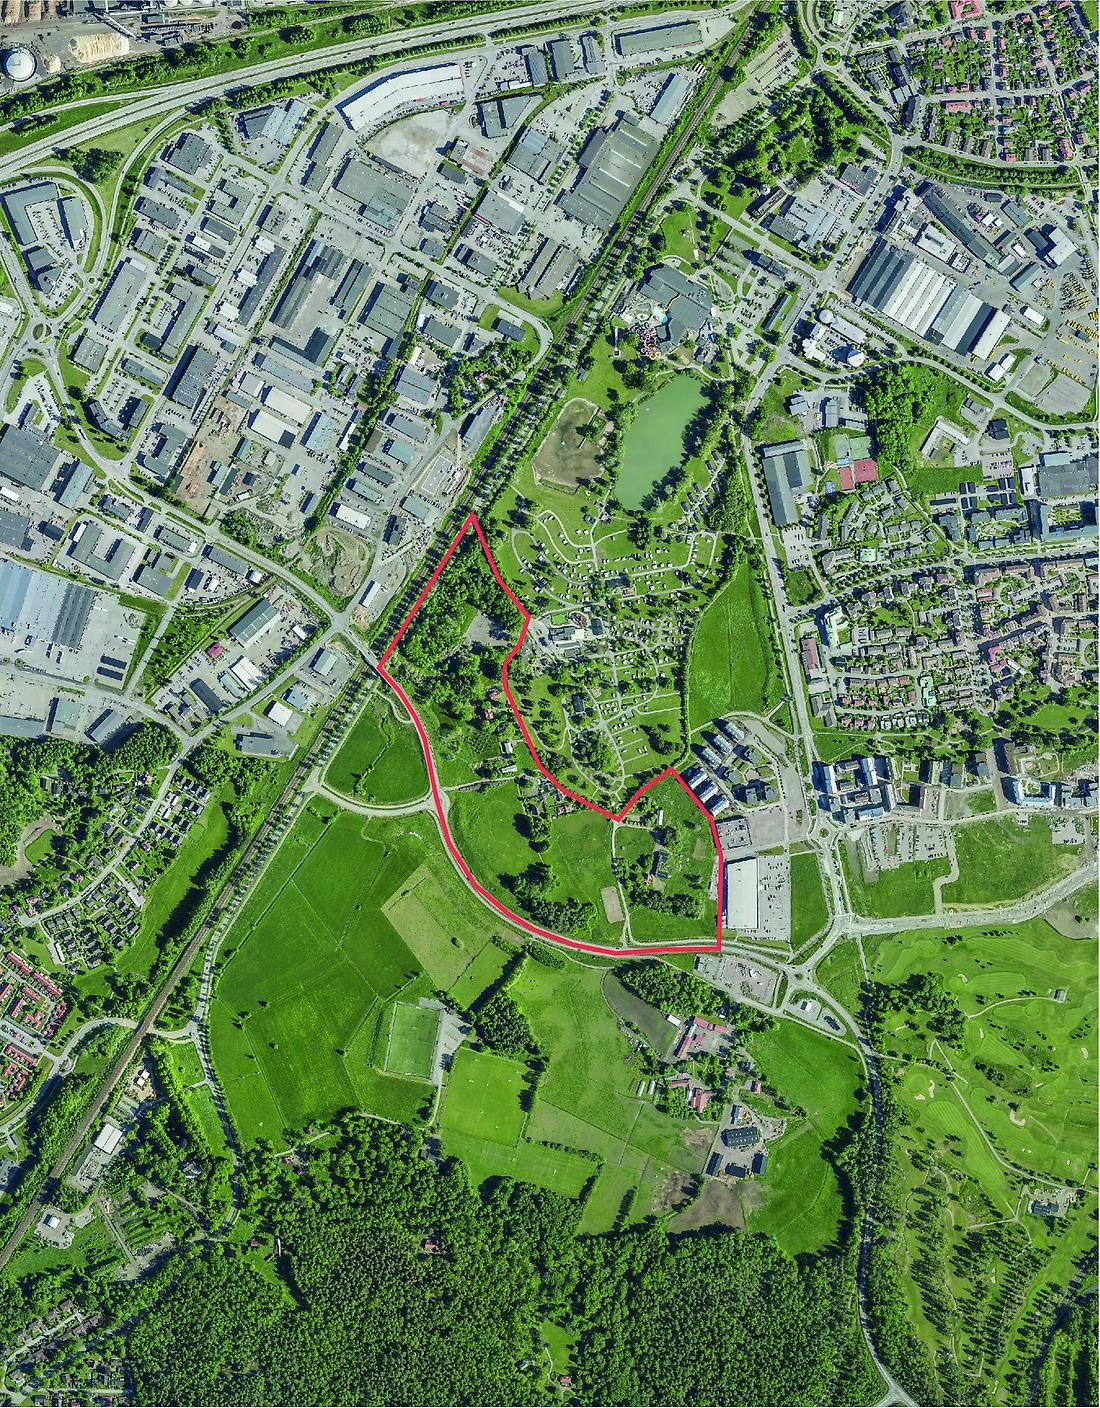 Kartbild i grönt med Stora Hyddan markerat.